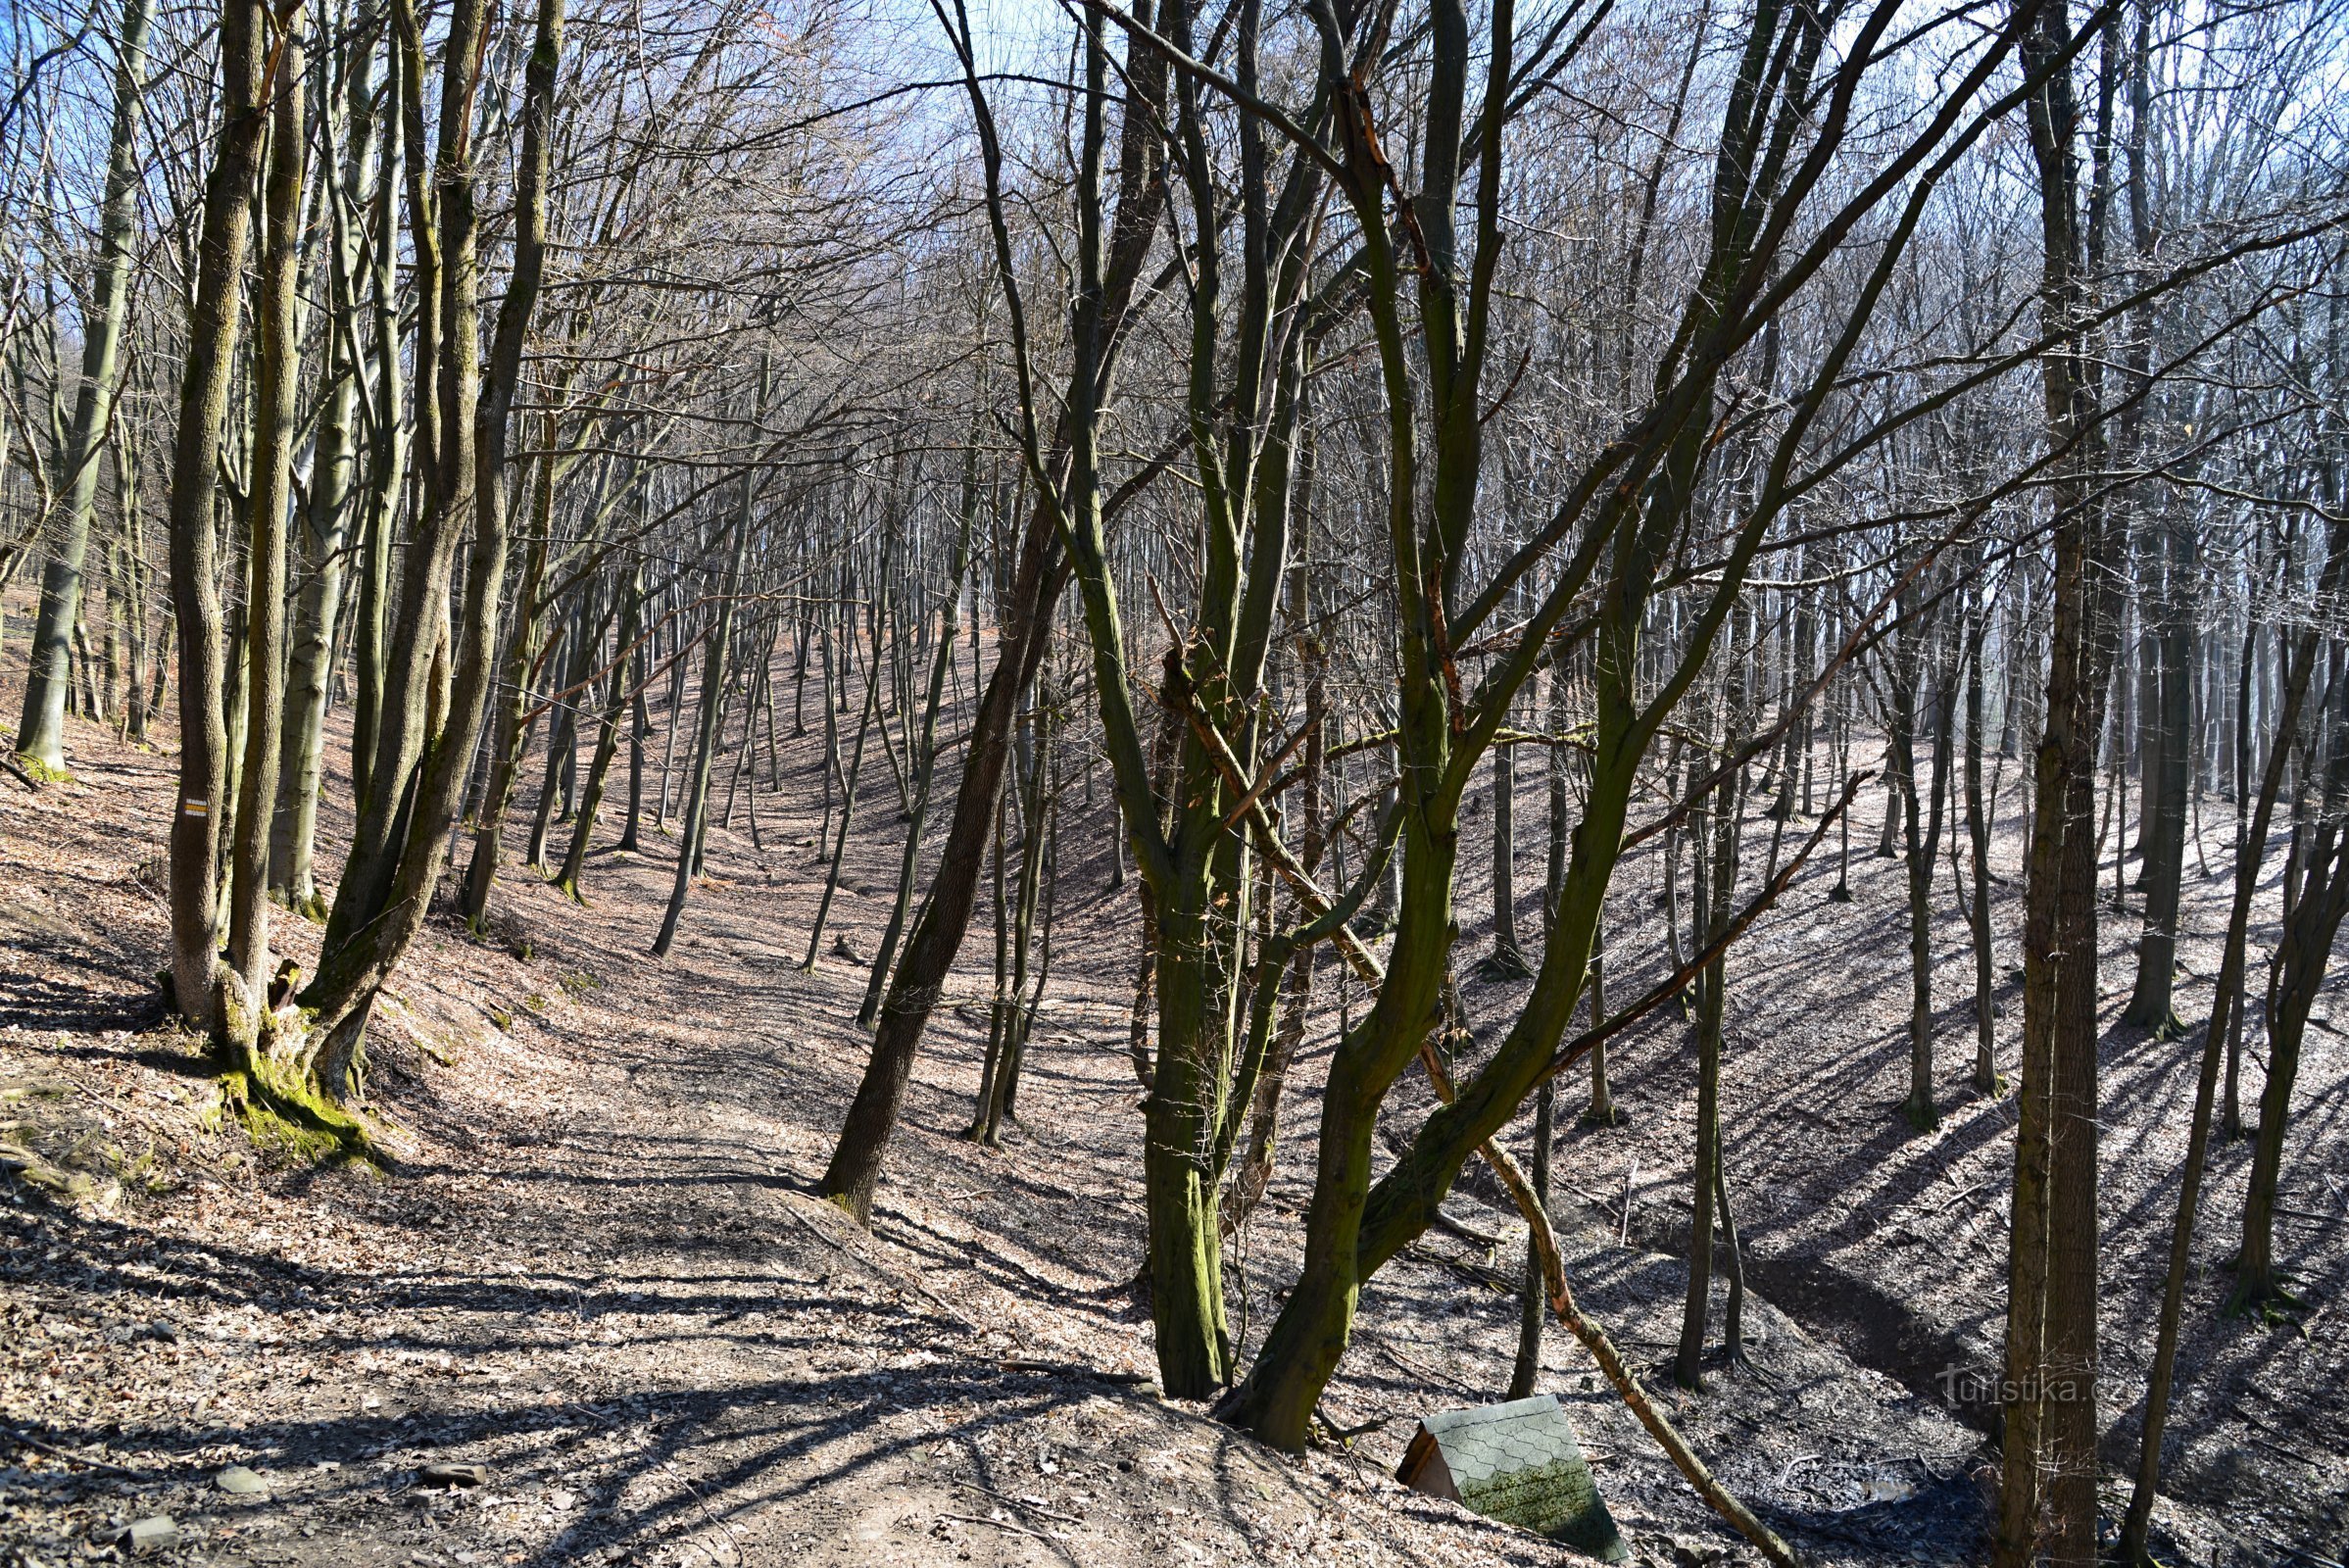 Hostýnské vrchy: Groves - trên đường mòn đi bộ đường dài màu vàng